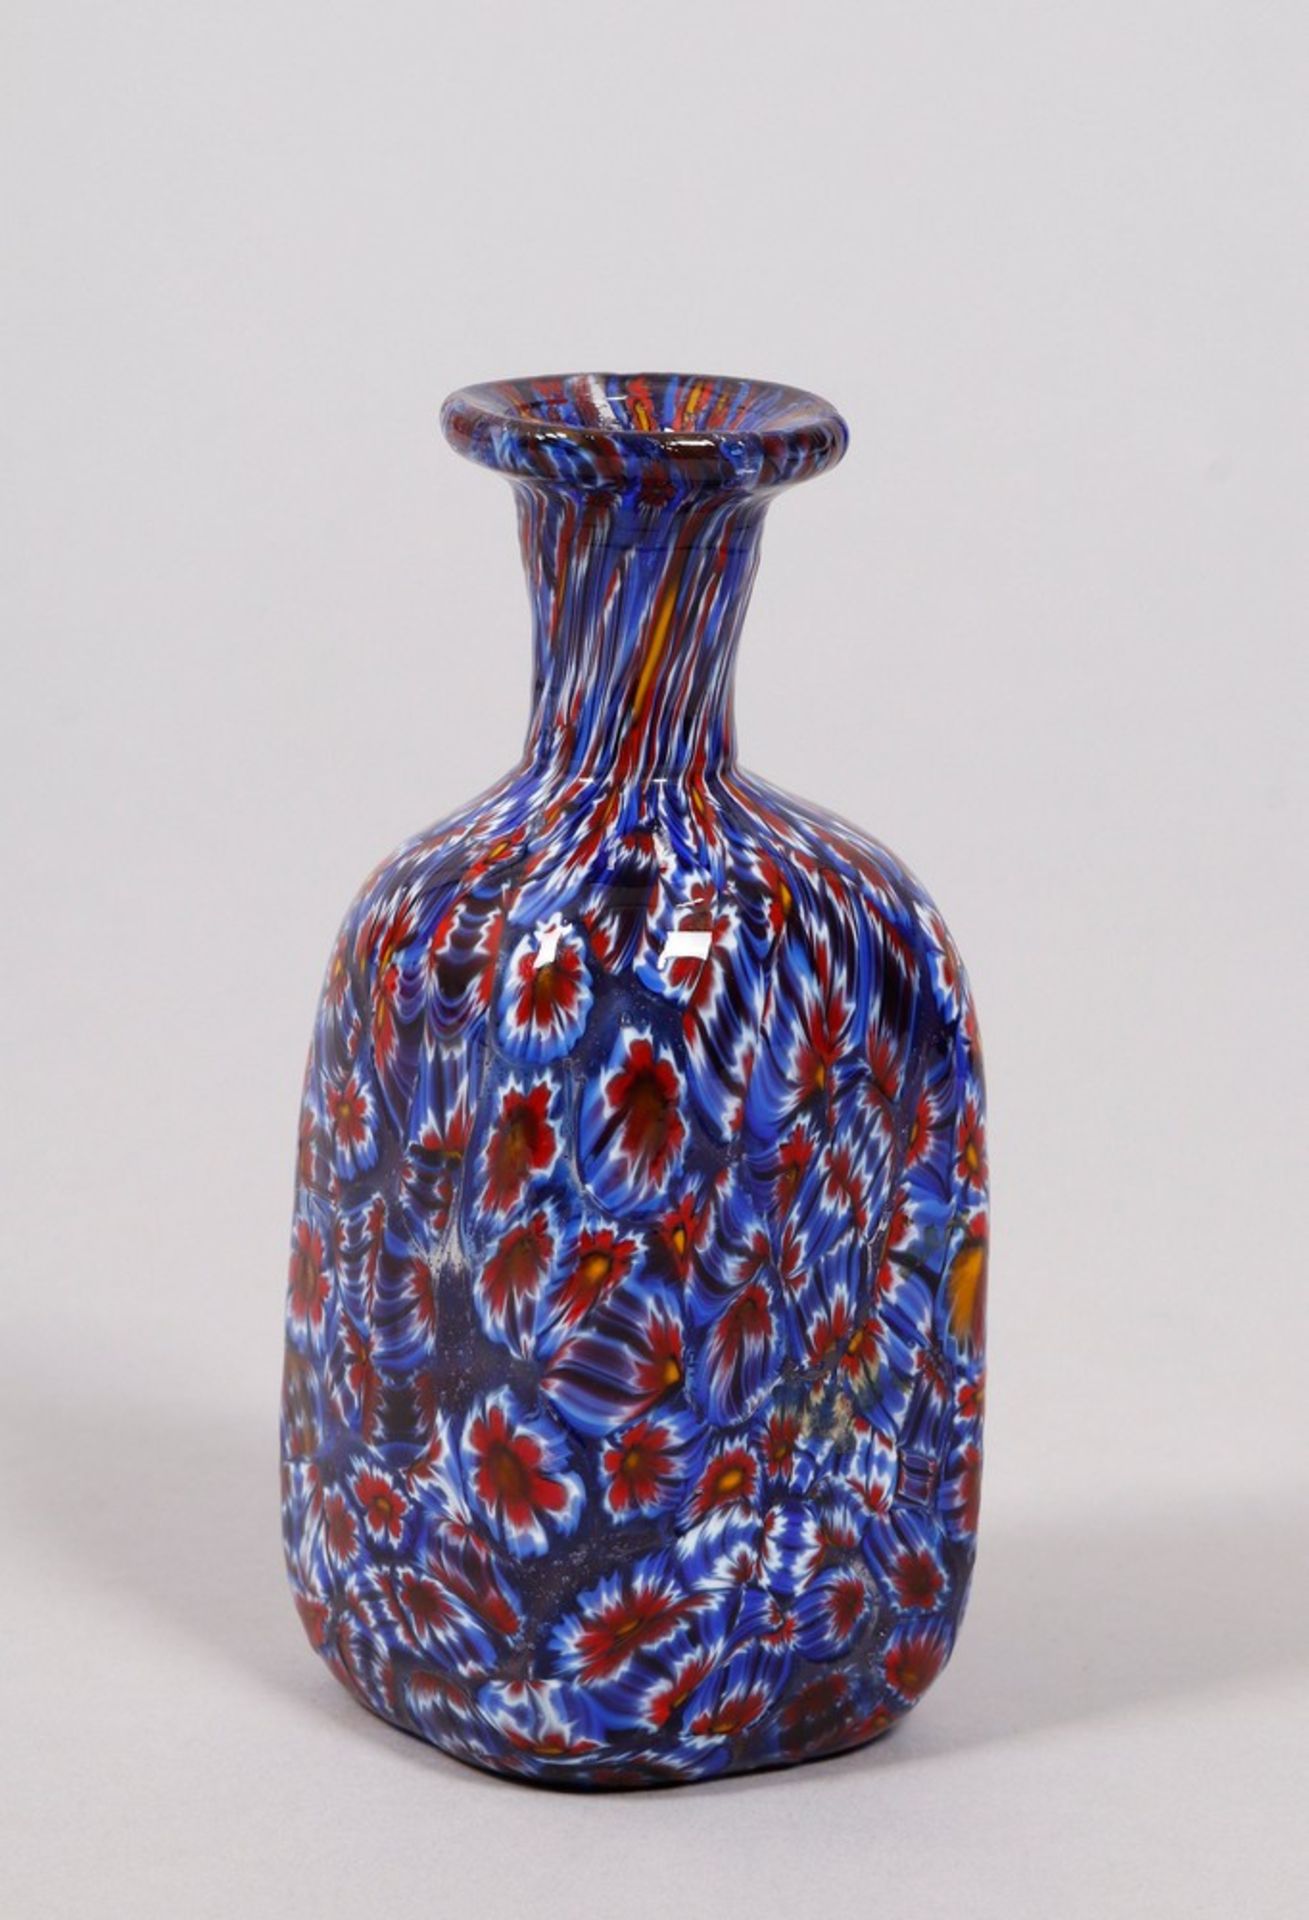 Small bottle vase, probably Vetreria Campanella, Murano, Italy, mid-20th C.